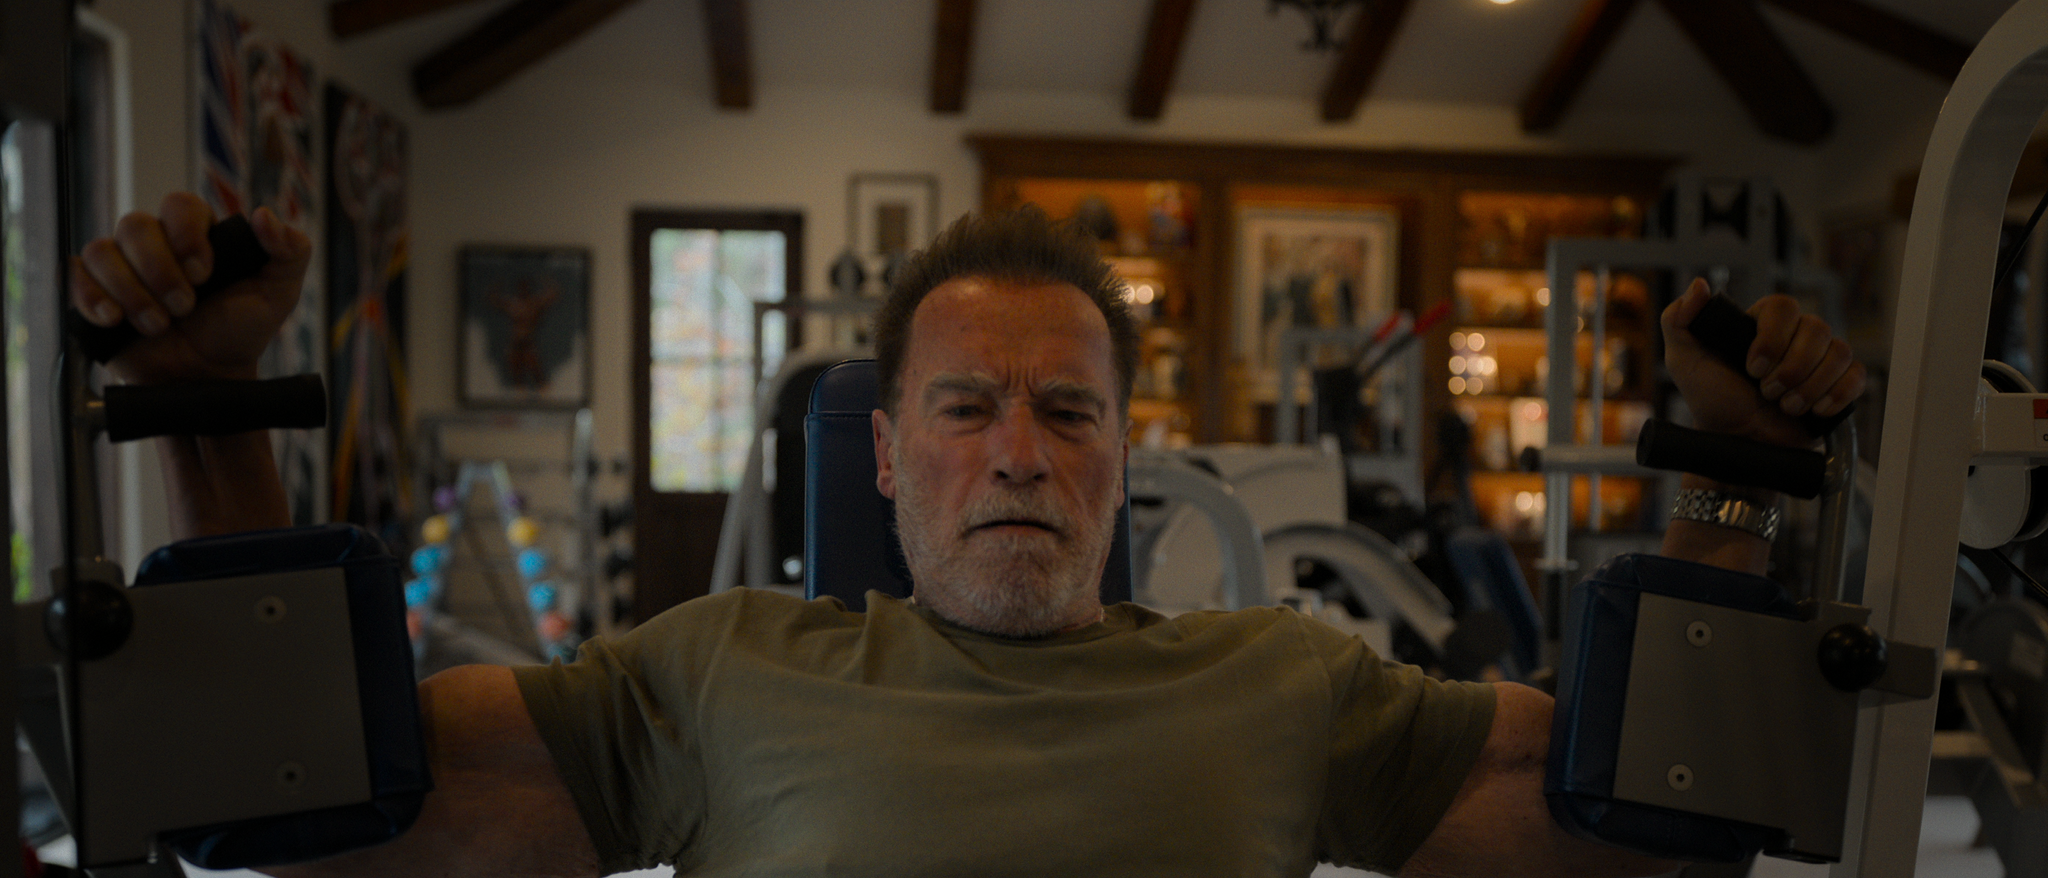 Arnold Schwarzenegger iscenesetter seg selv på Netflix 